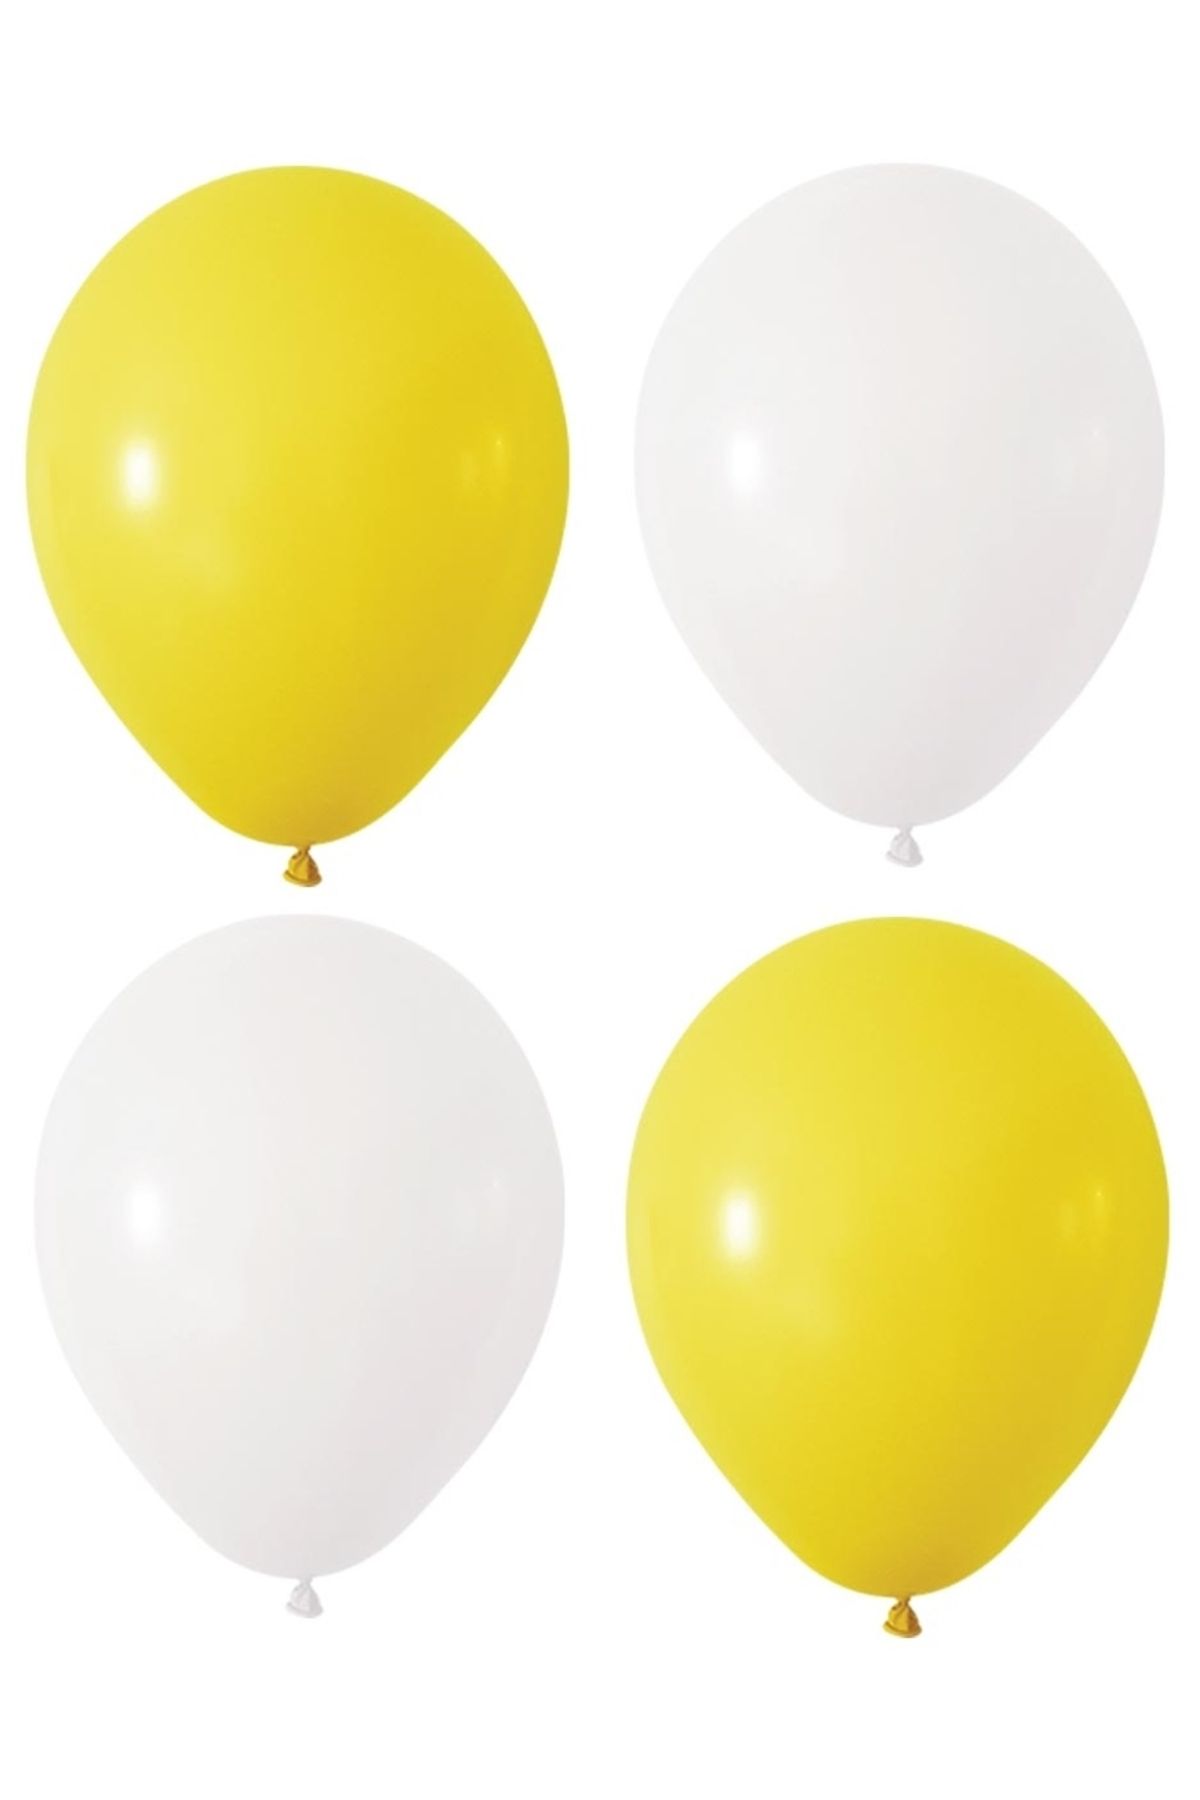 HKNYS Sarı Beyaz Renk Pastel Lateks Balon 50 Adet +Balon Zinciri Hediye